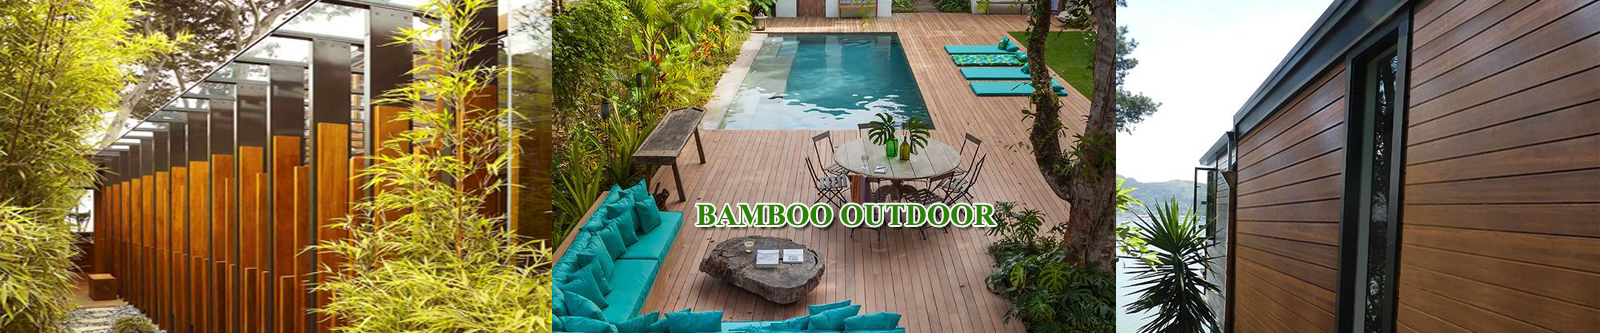 Bamboo Outdoor